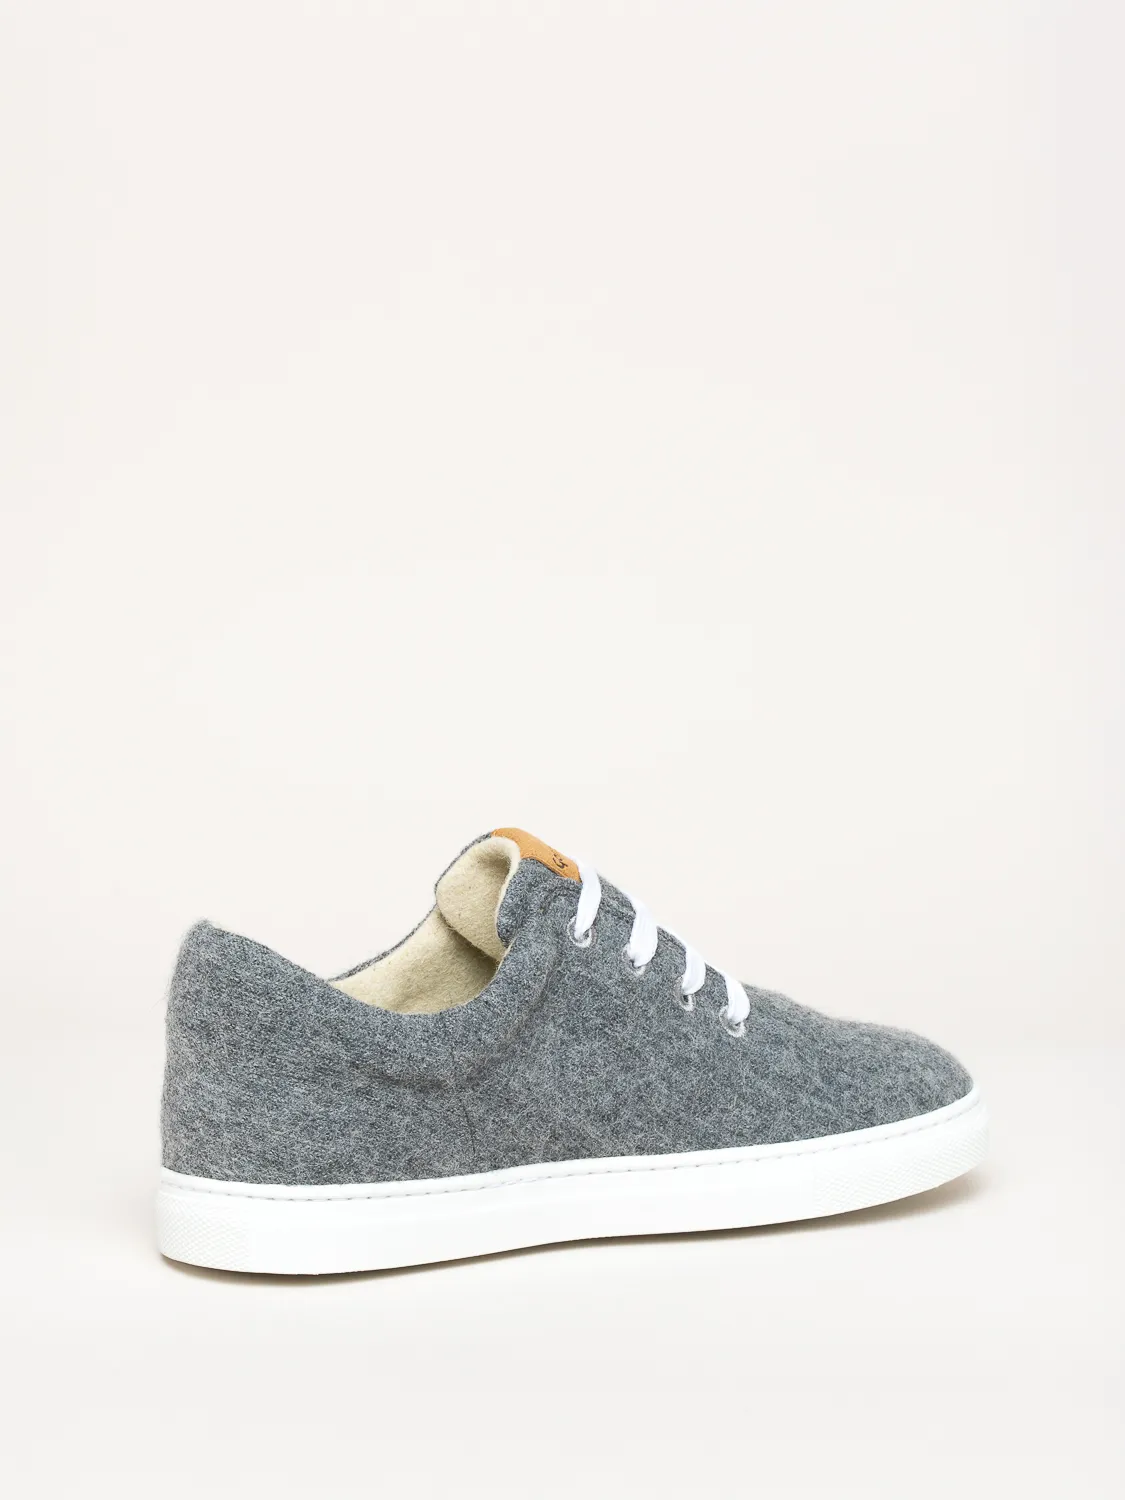 Gottstein-Wool-Walker-101-Woll-Sneaker-grey (3)